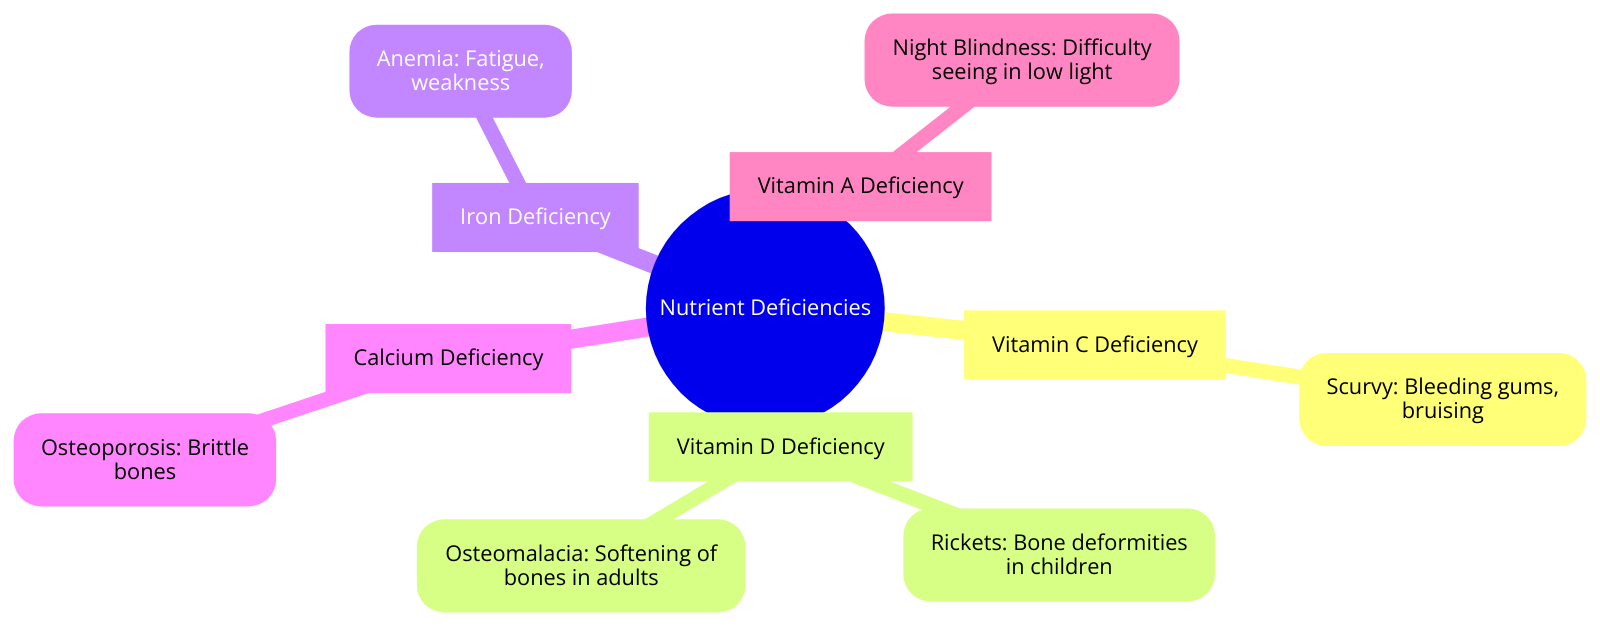 signs indicating various nutrient deficiencies